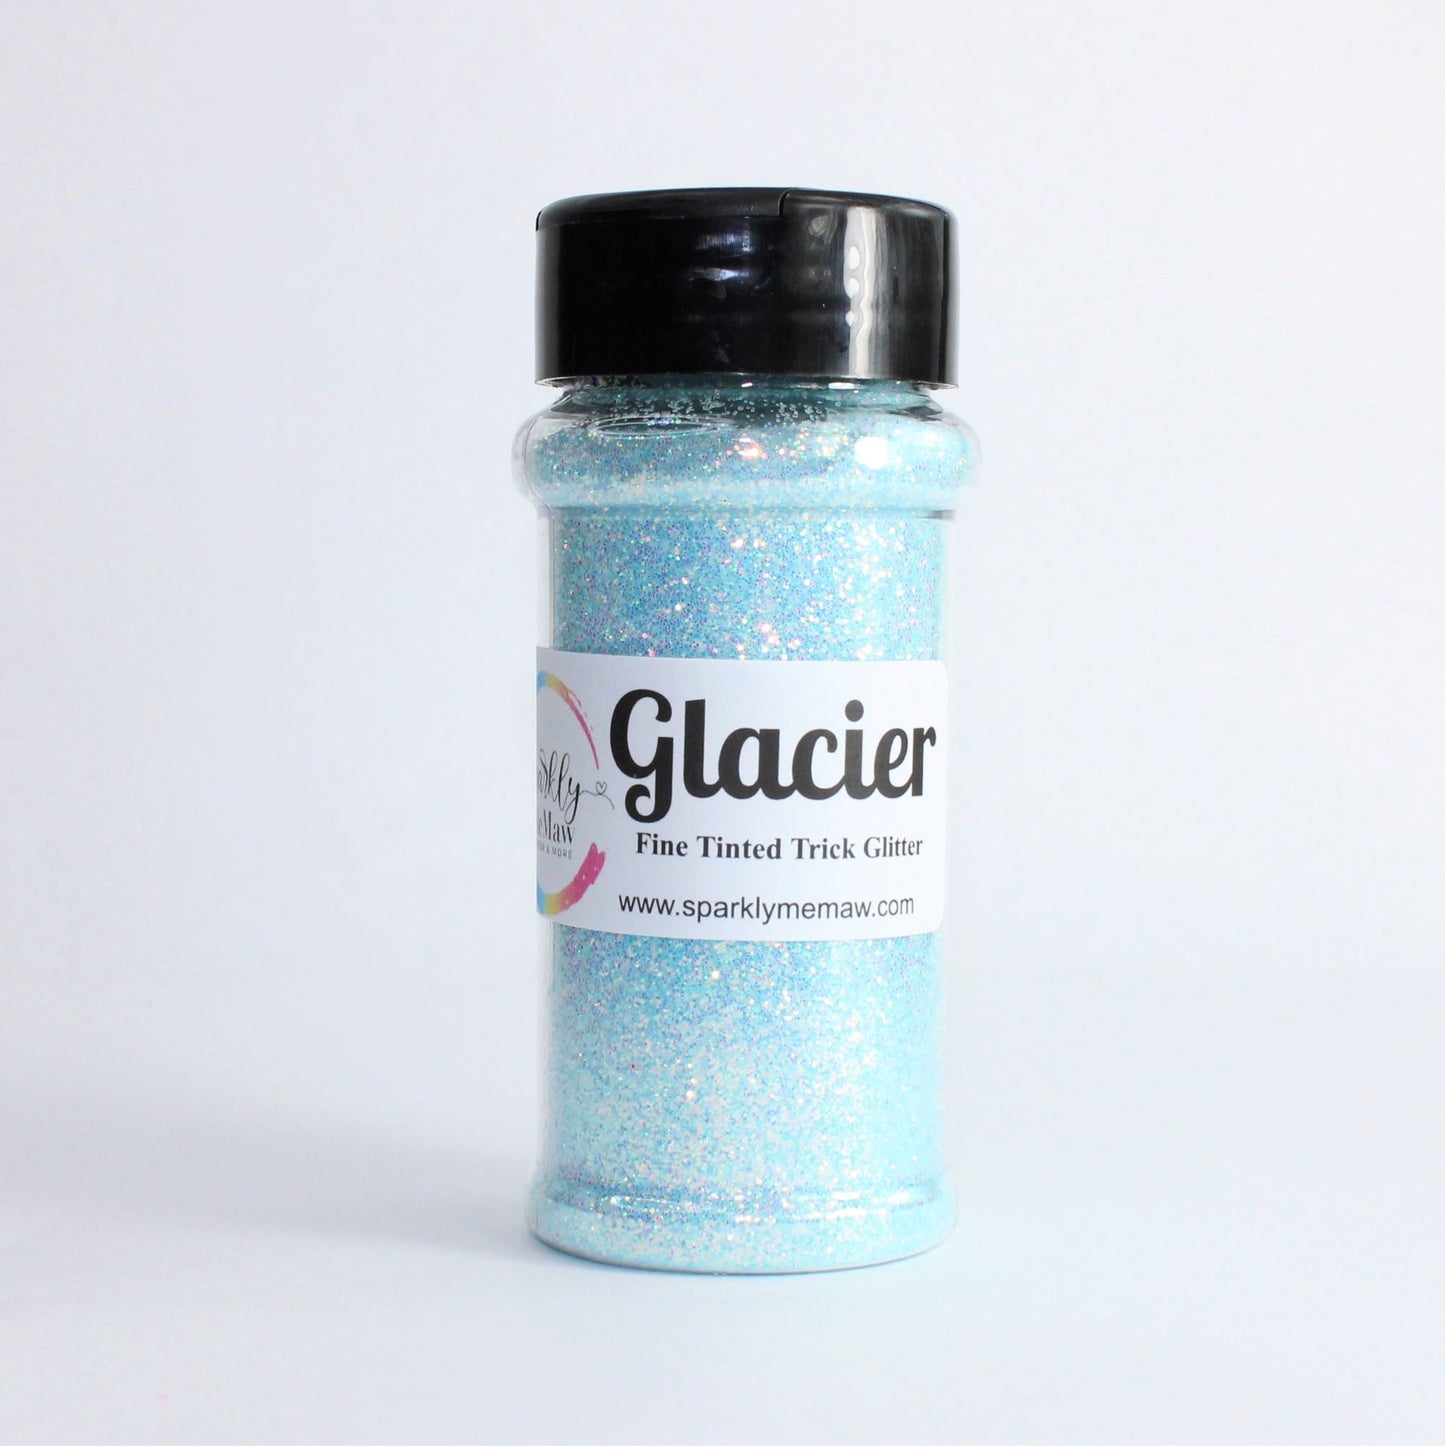 Glacier Ultra Fine Trick Glitter